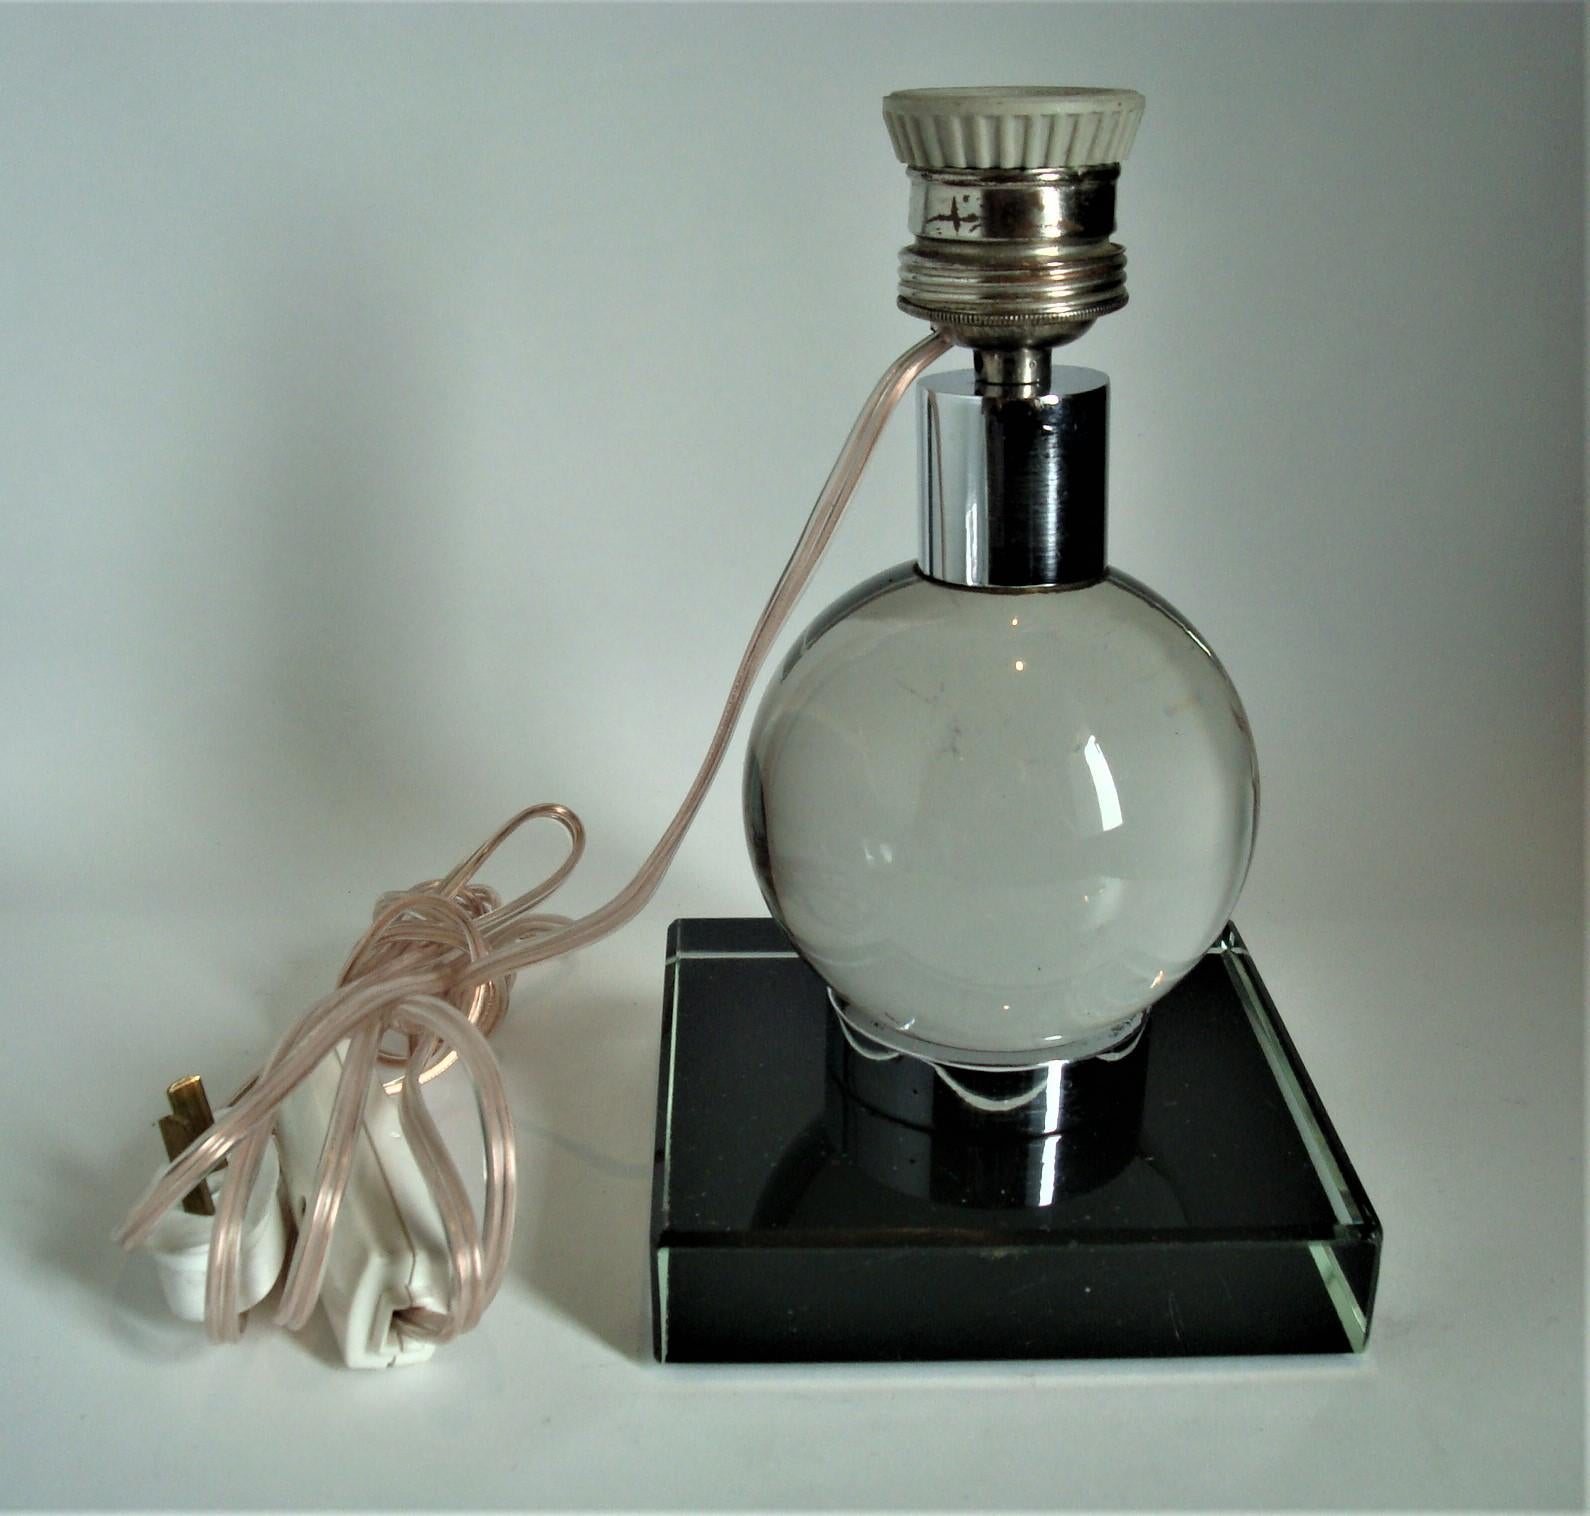 Lampe de table Art déco à boule réglable en verre transparent dans le style de Jacques Adnet (1900-1984), base en verre et douille en métal. La balle peut être déplacée dans différentes positions.